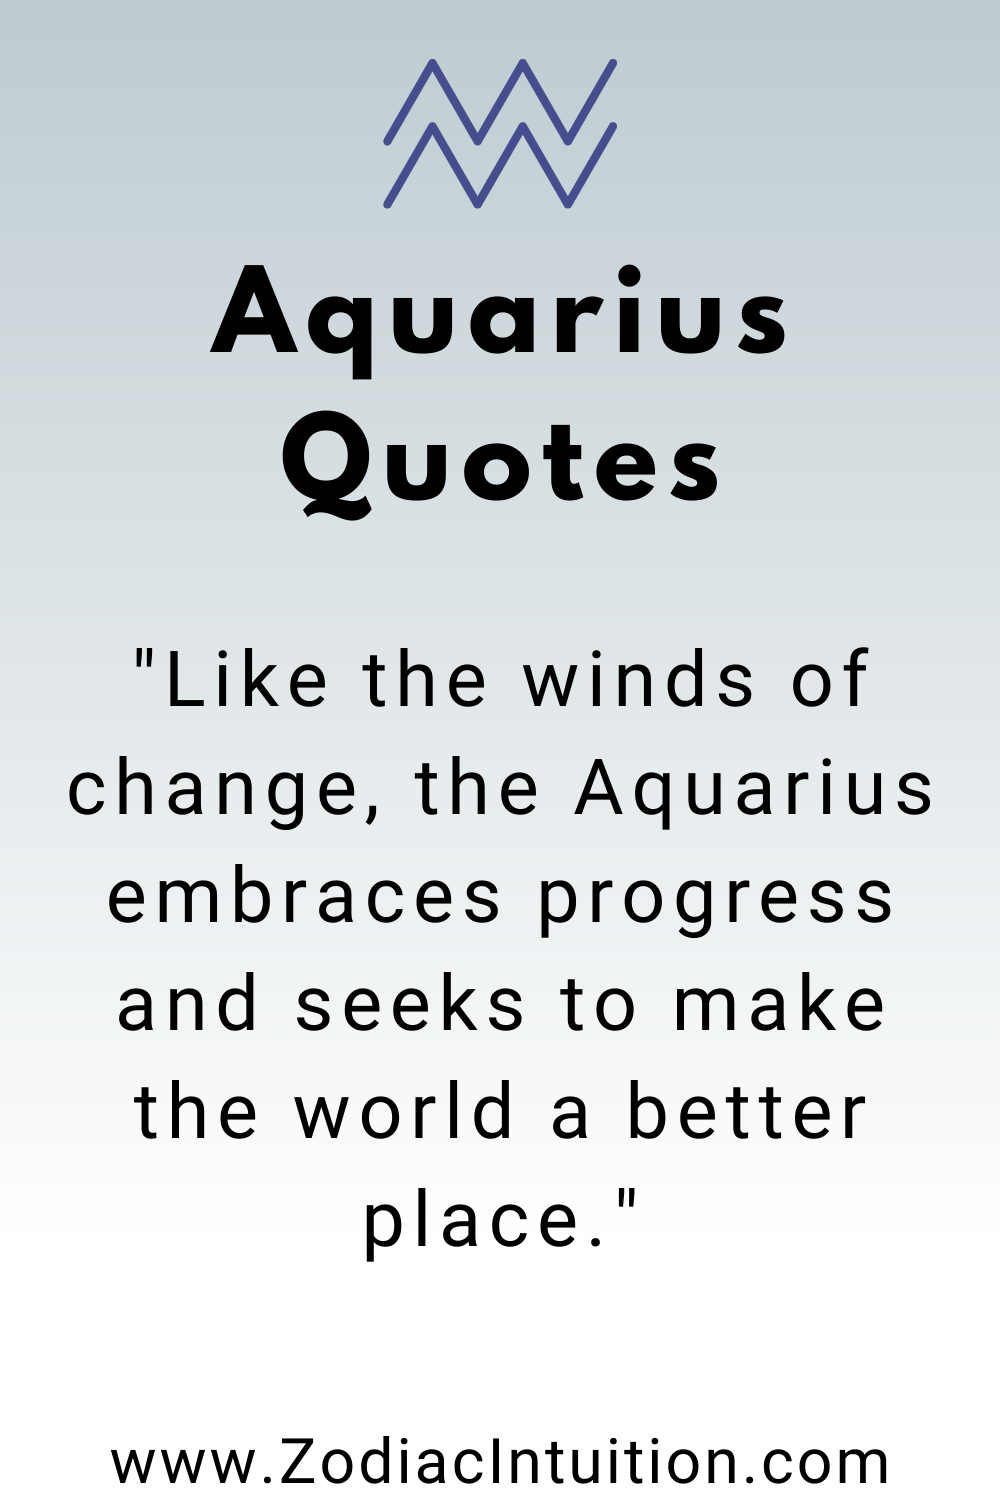 Top 5 Aquarius Quotes And Inspiration